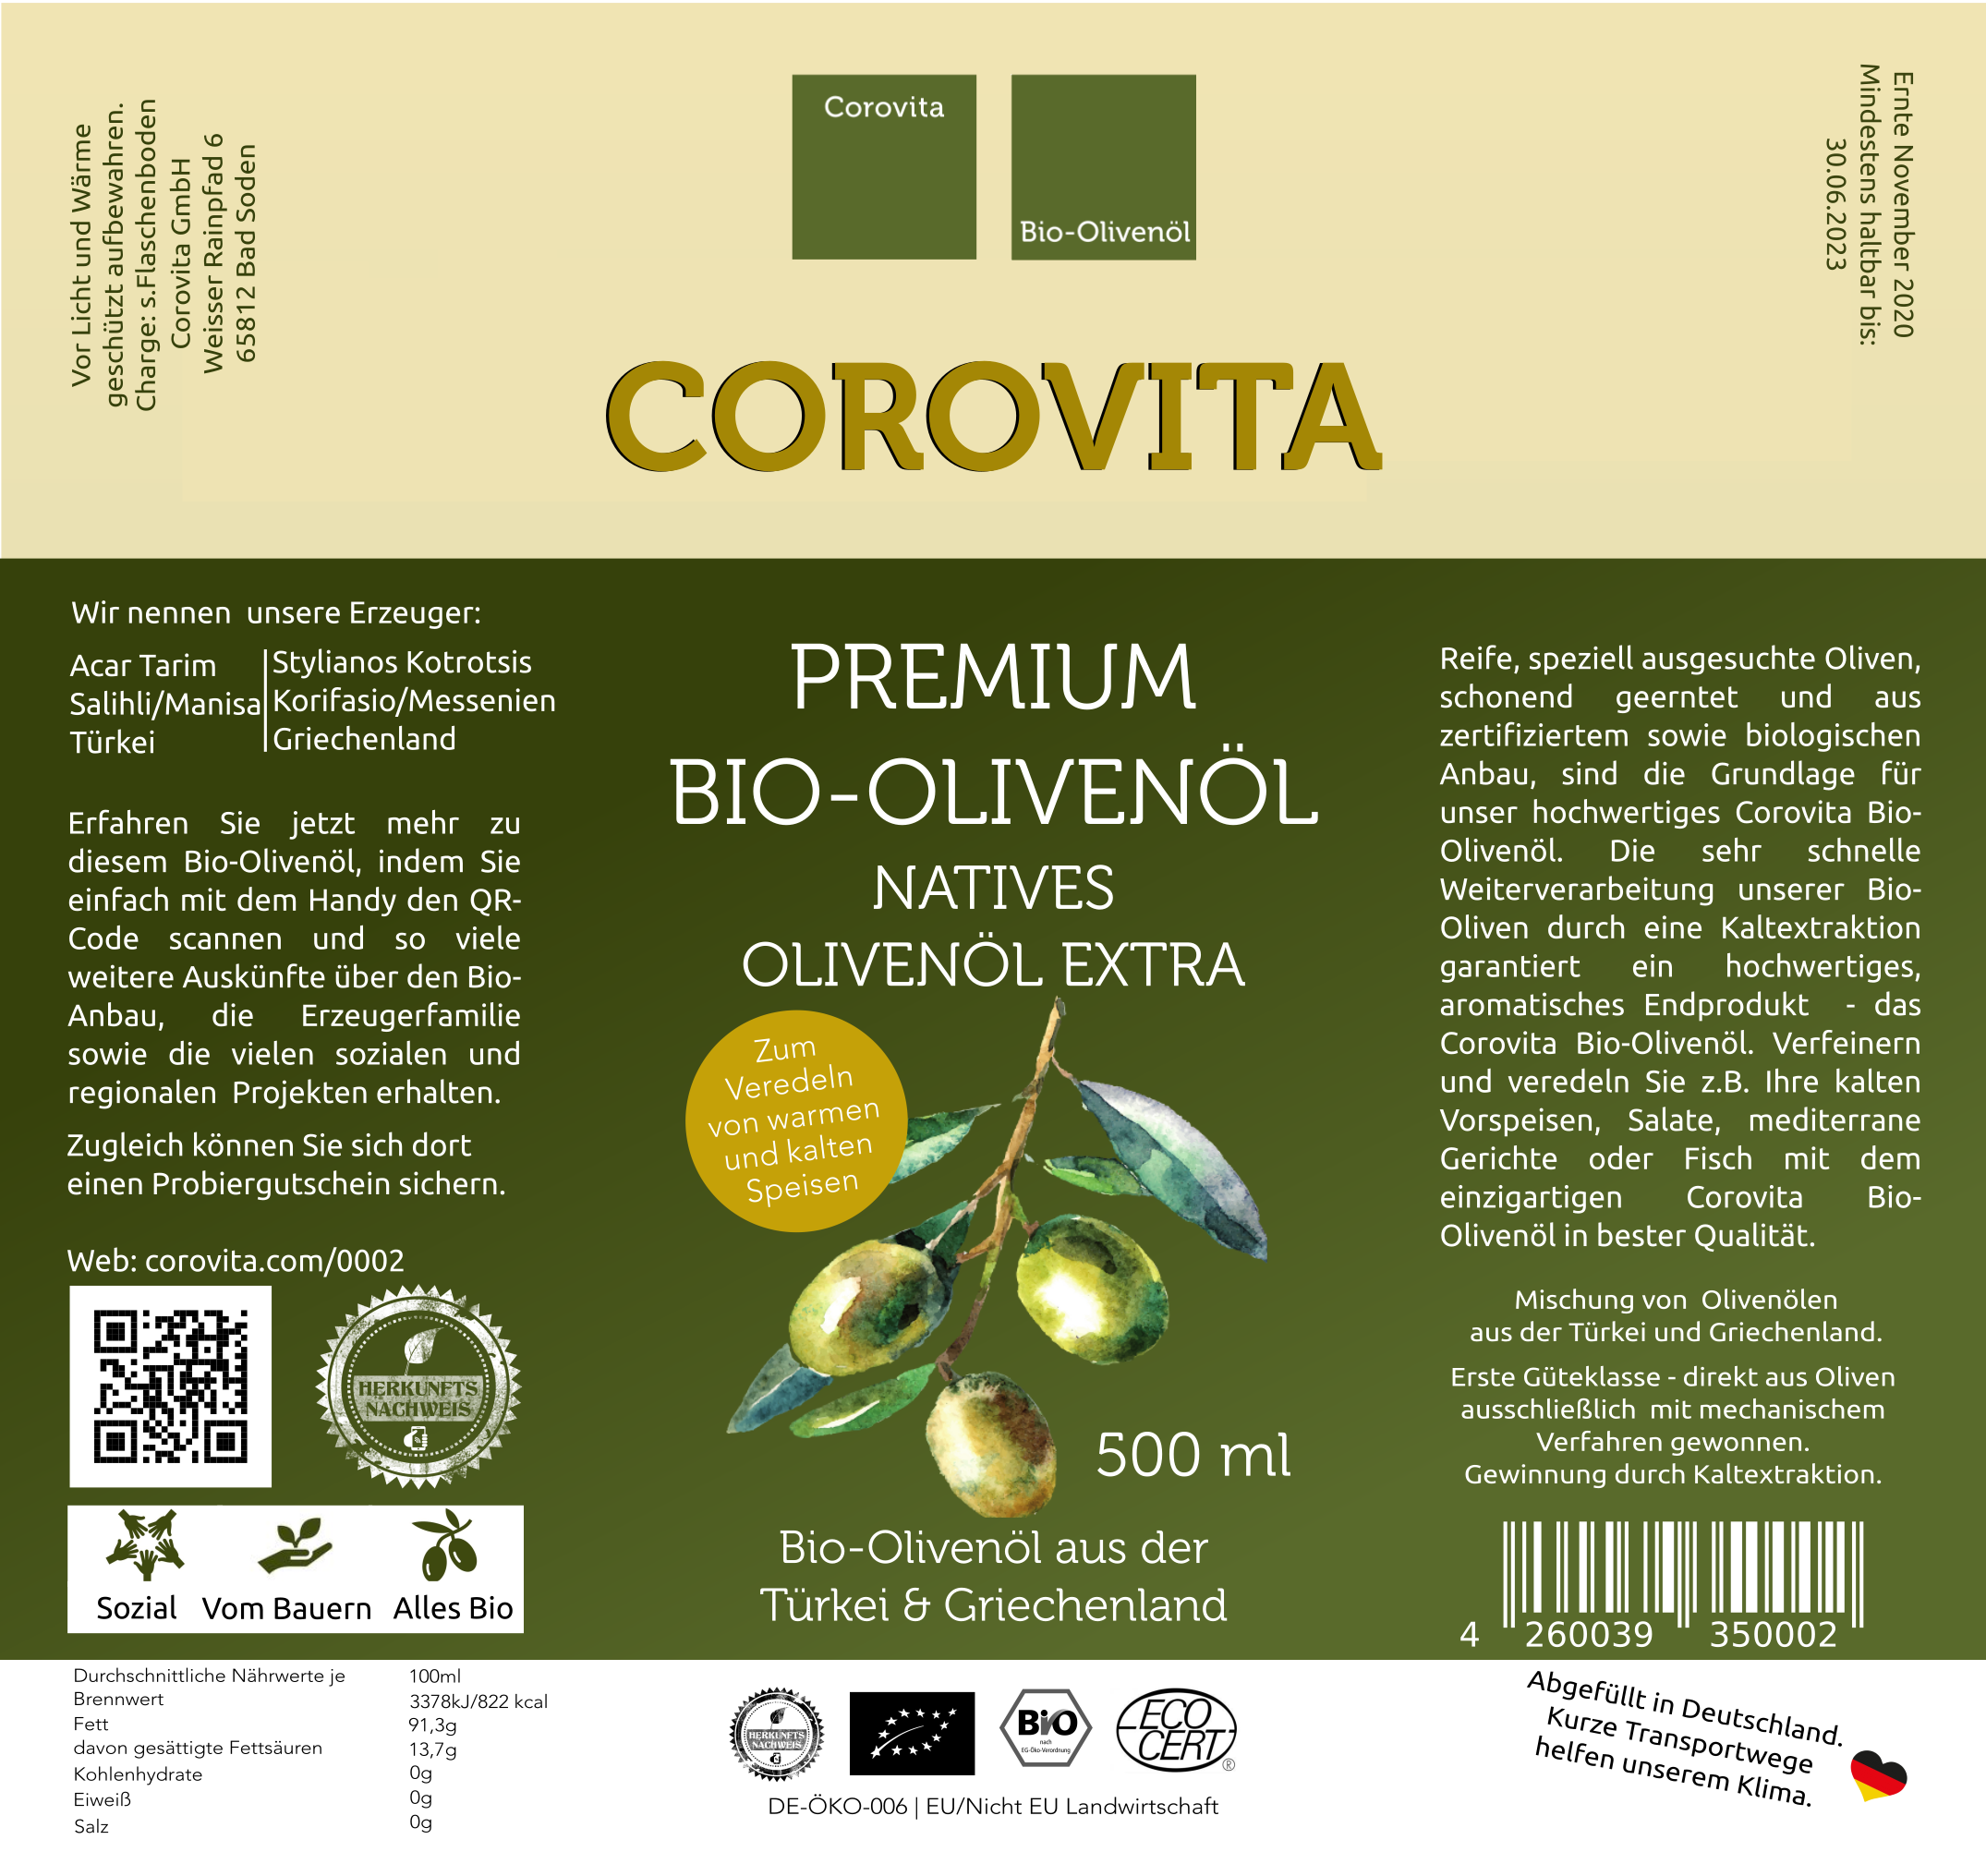 Bio-Olivenöl aus Türkei & Griechenland